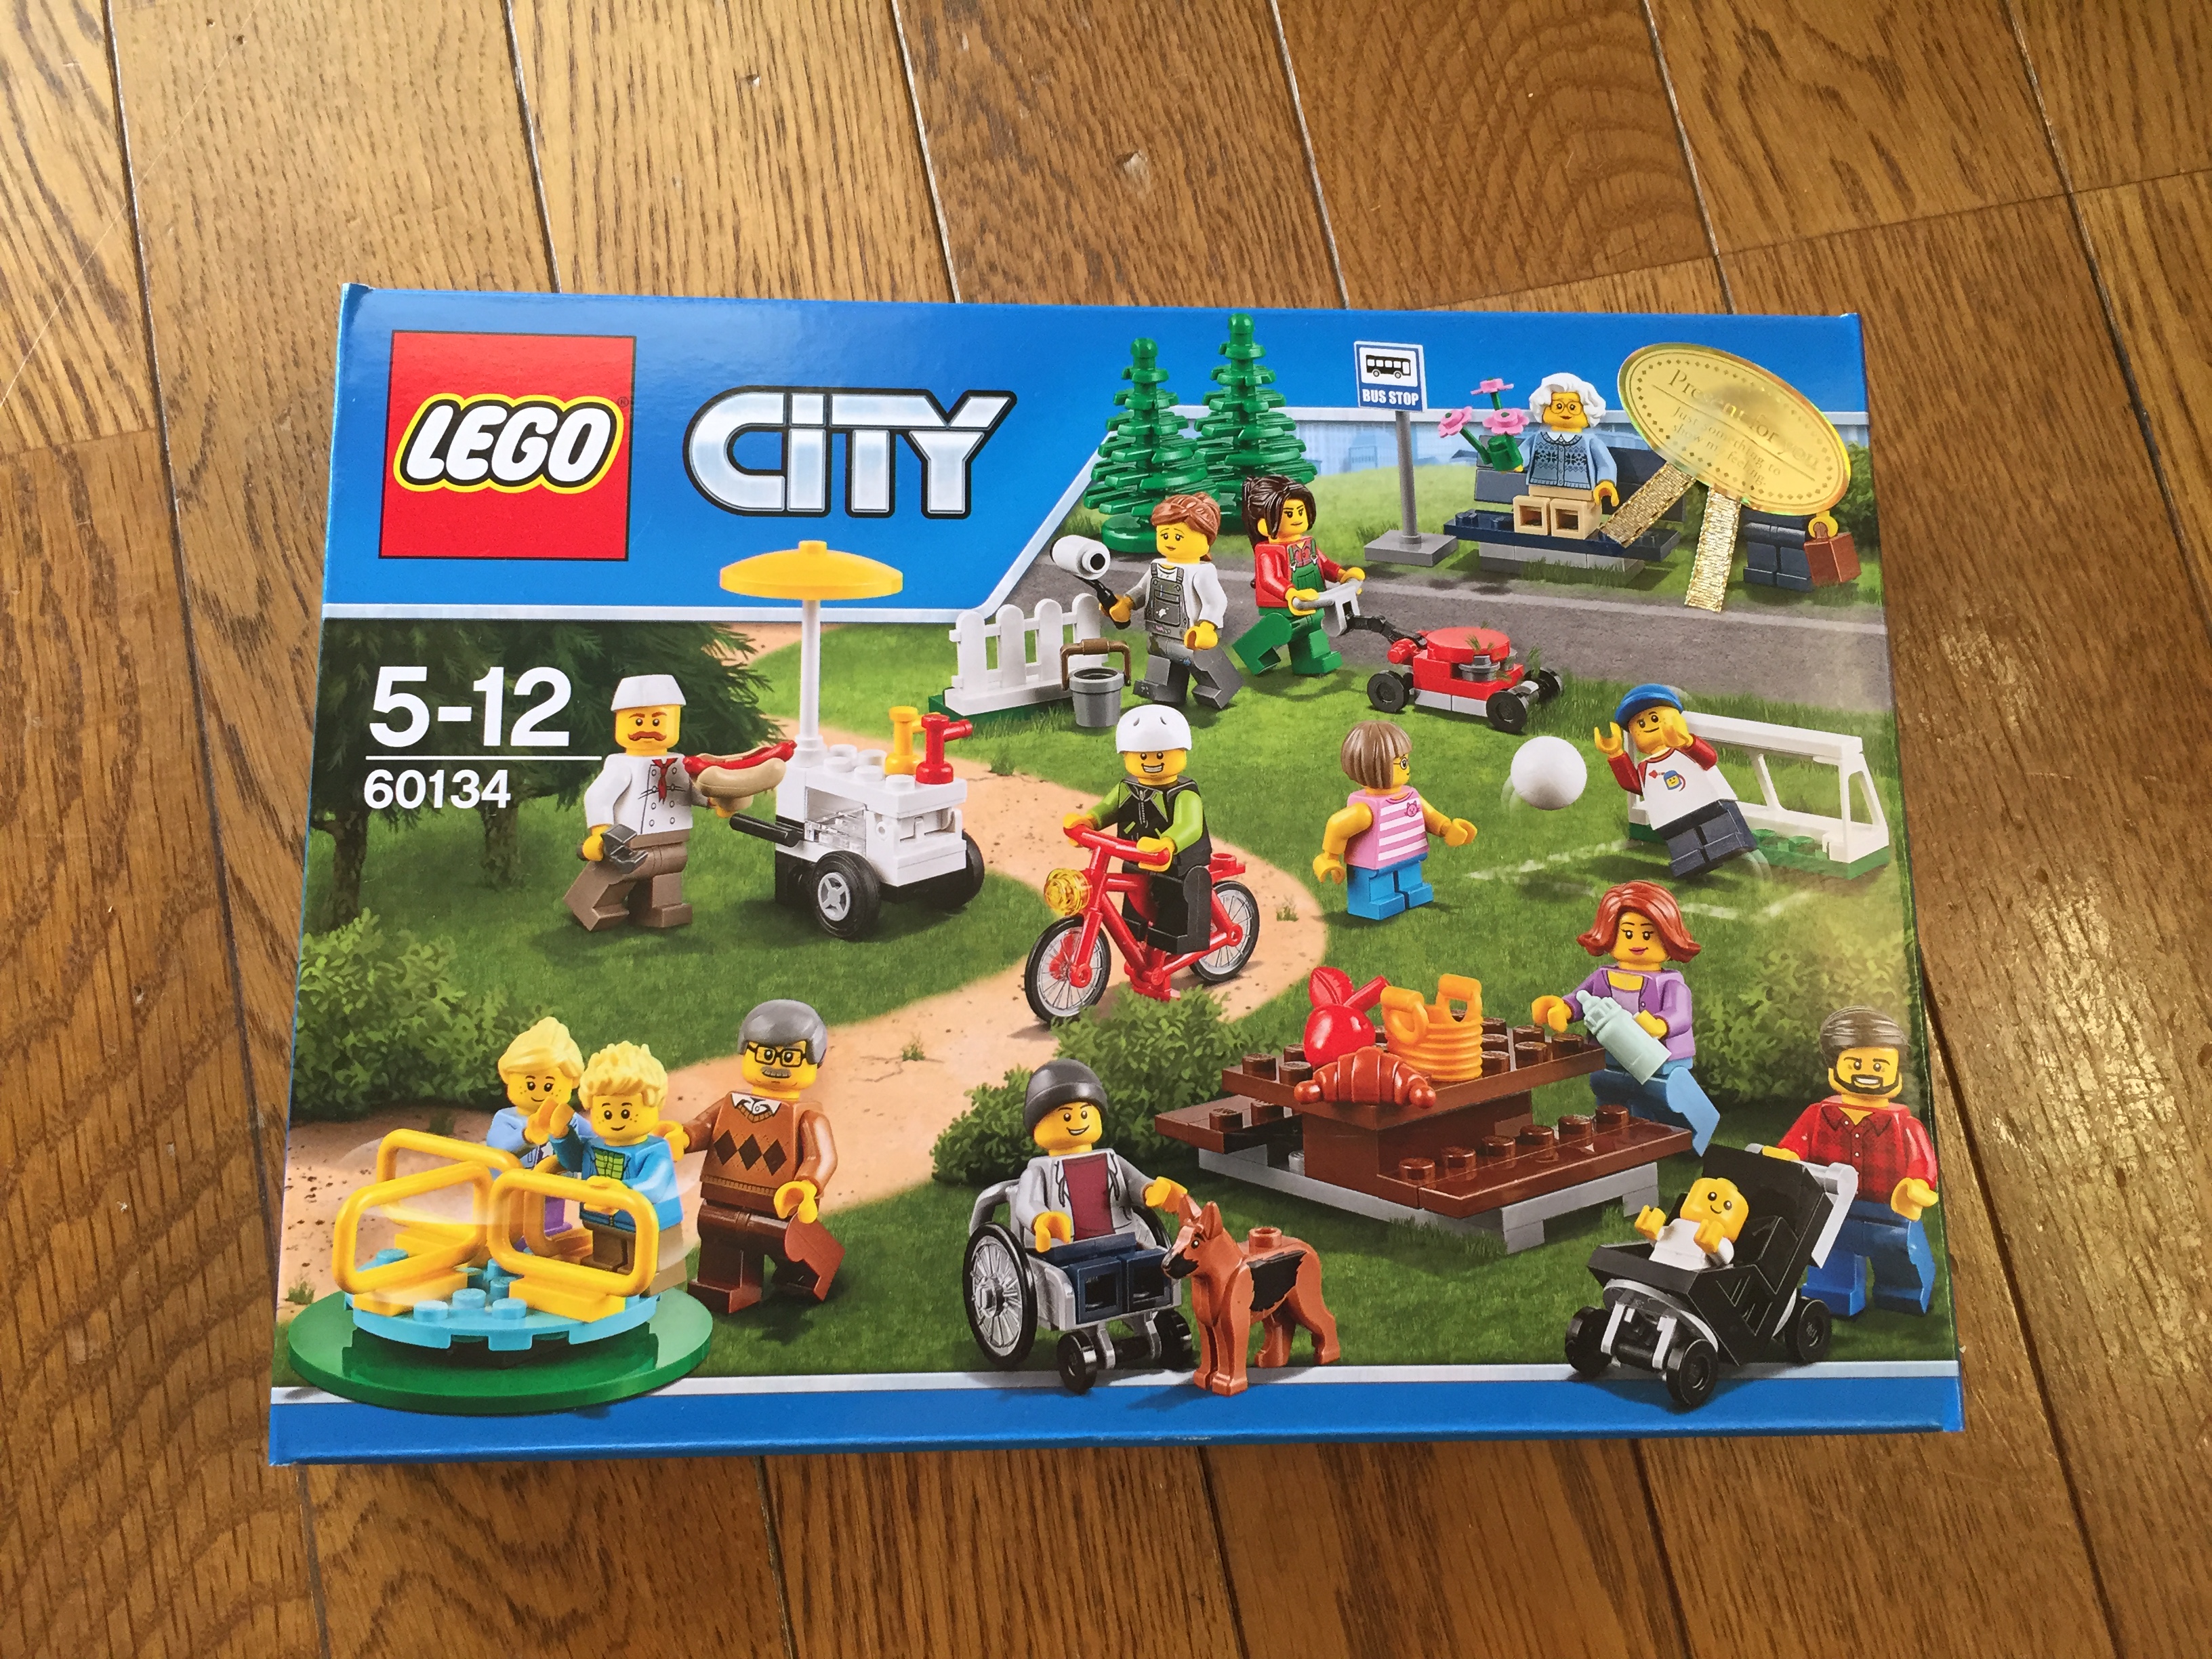 LEGO CITYシリーズレゴ シティ 60134 のパッケージのイメージ